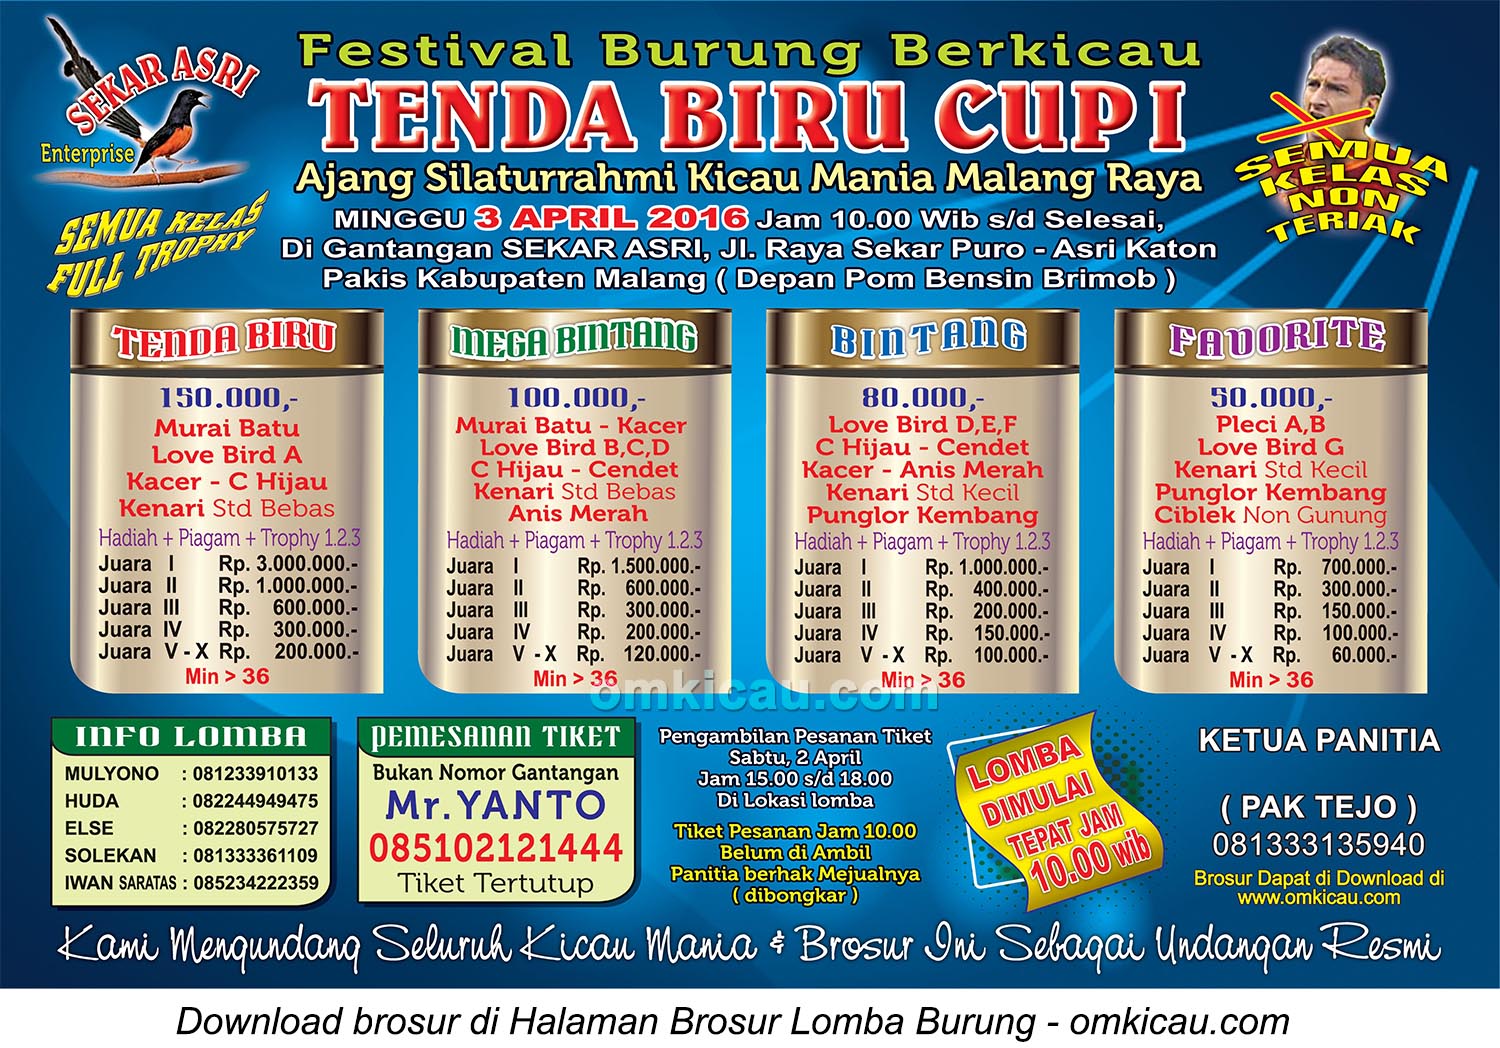 Brosur Lomba Burung Berkicau Tenda Biru Cup I, Malang, 3 April 2016